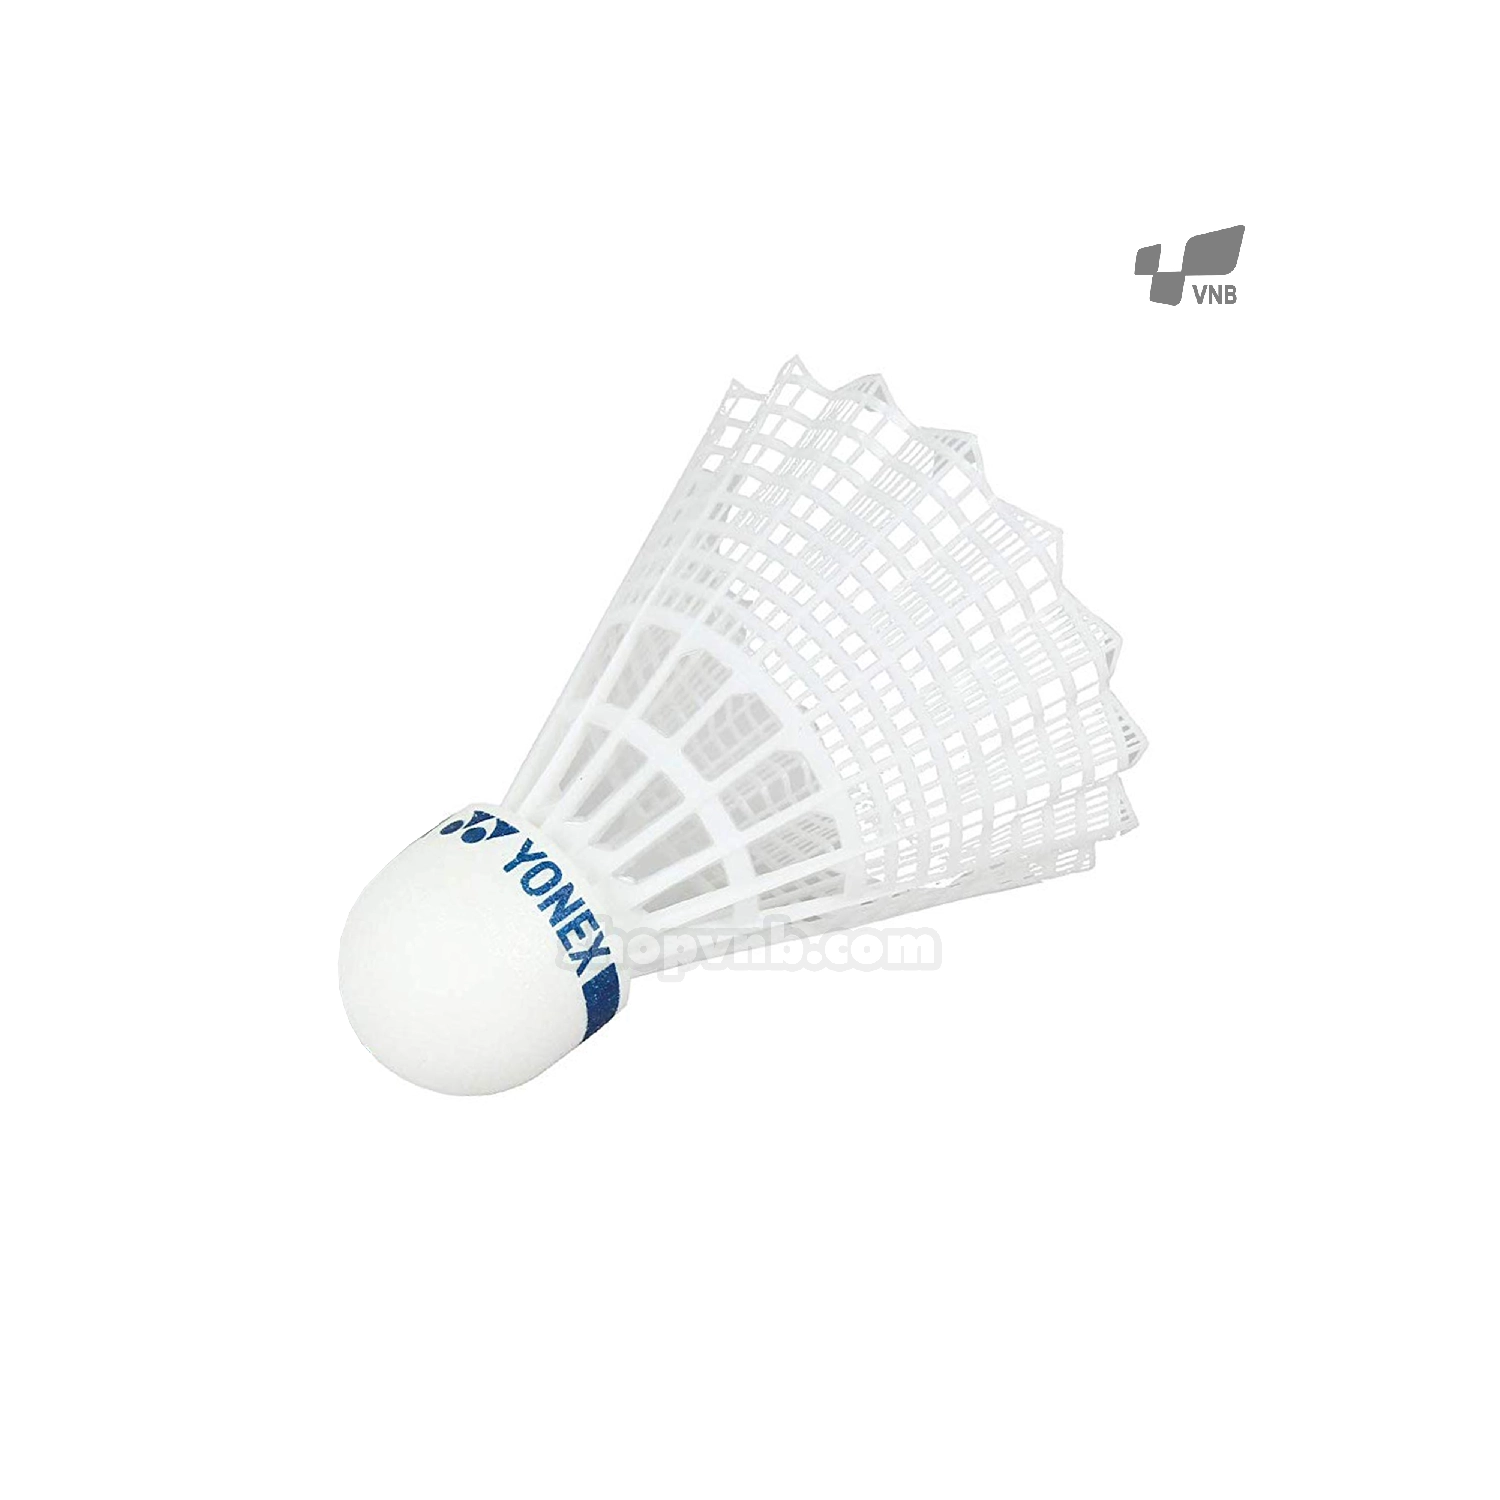 Quả cầu lông nhựa Yonex MAV 10 trắng